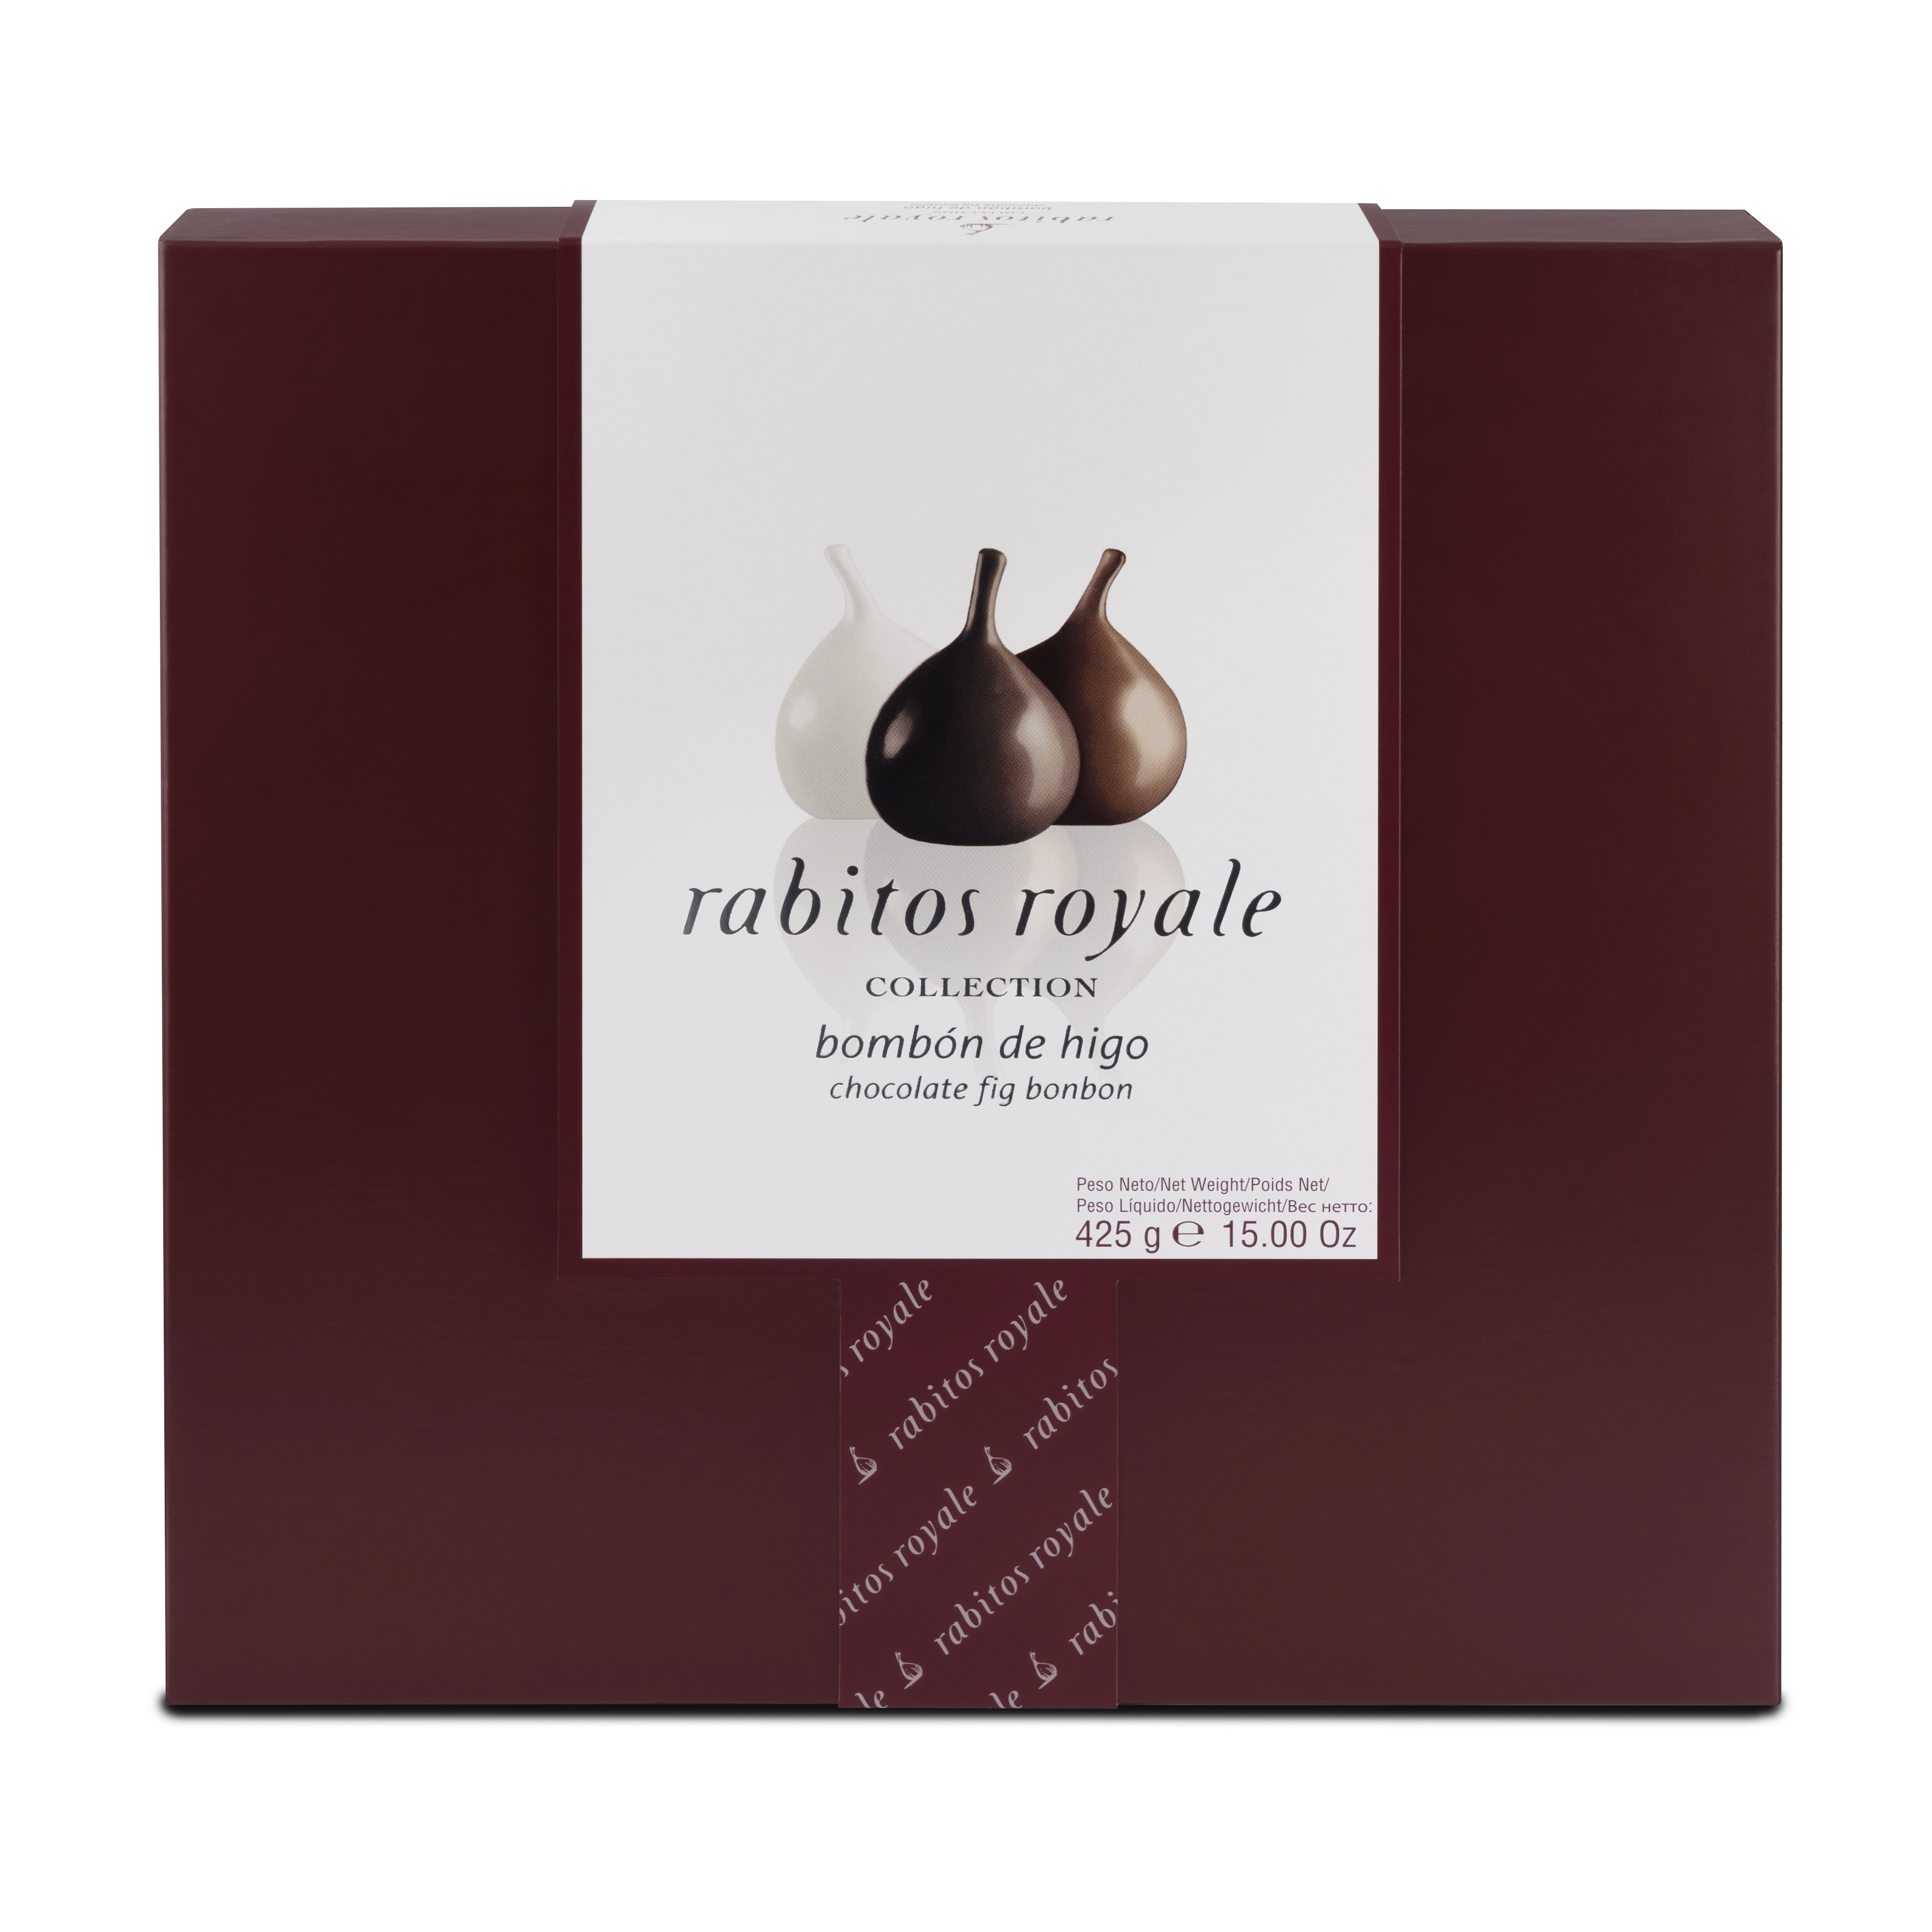 Smochine Asortate in Ciocolata Rabitos Royale 425g